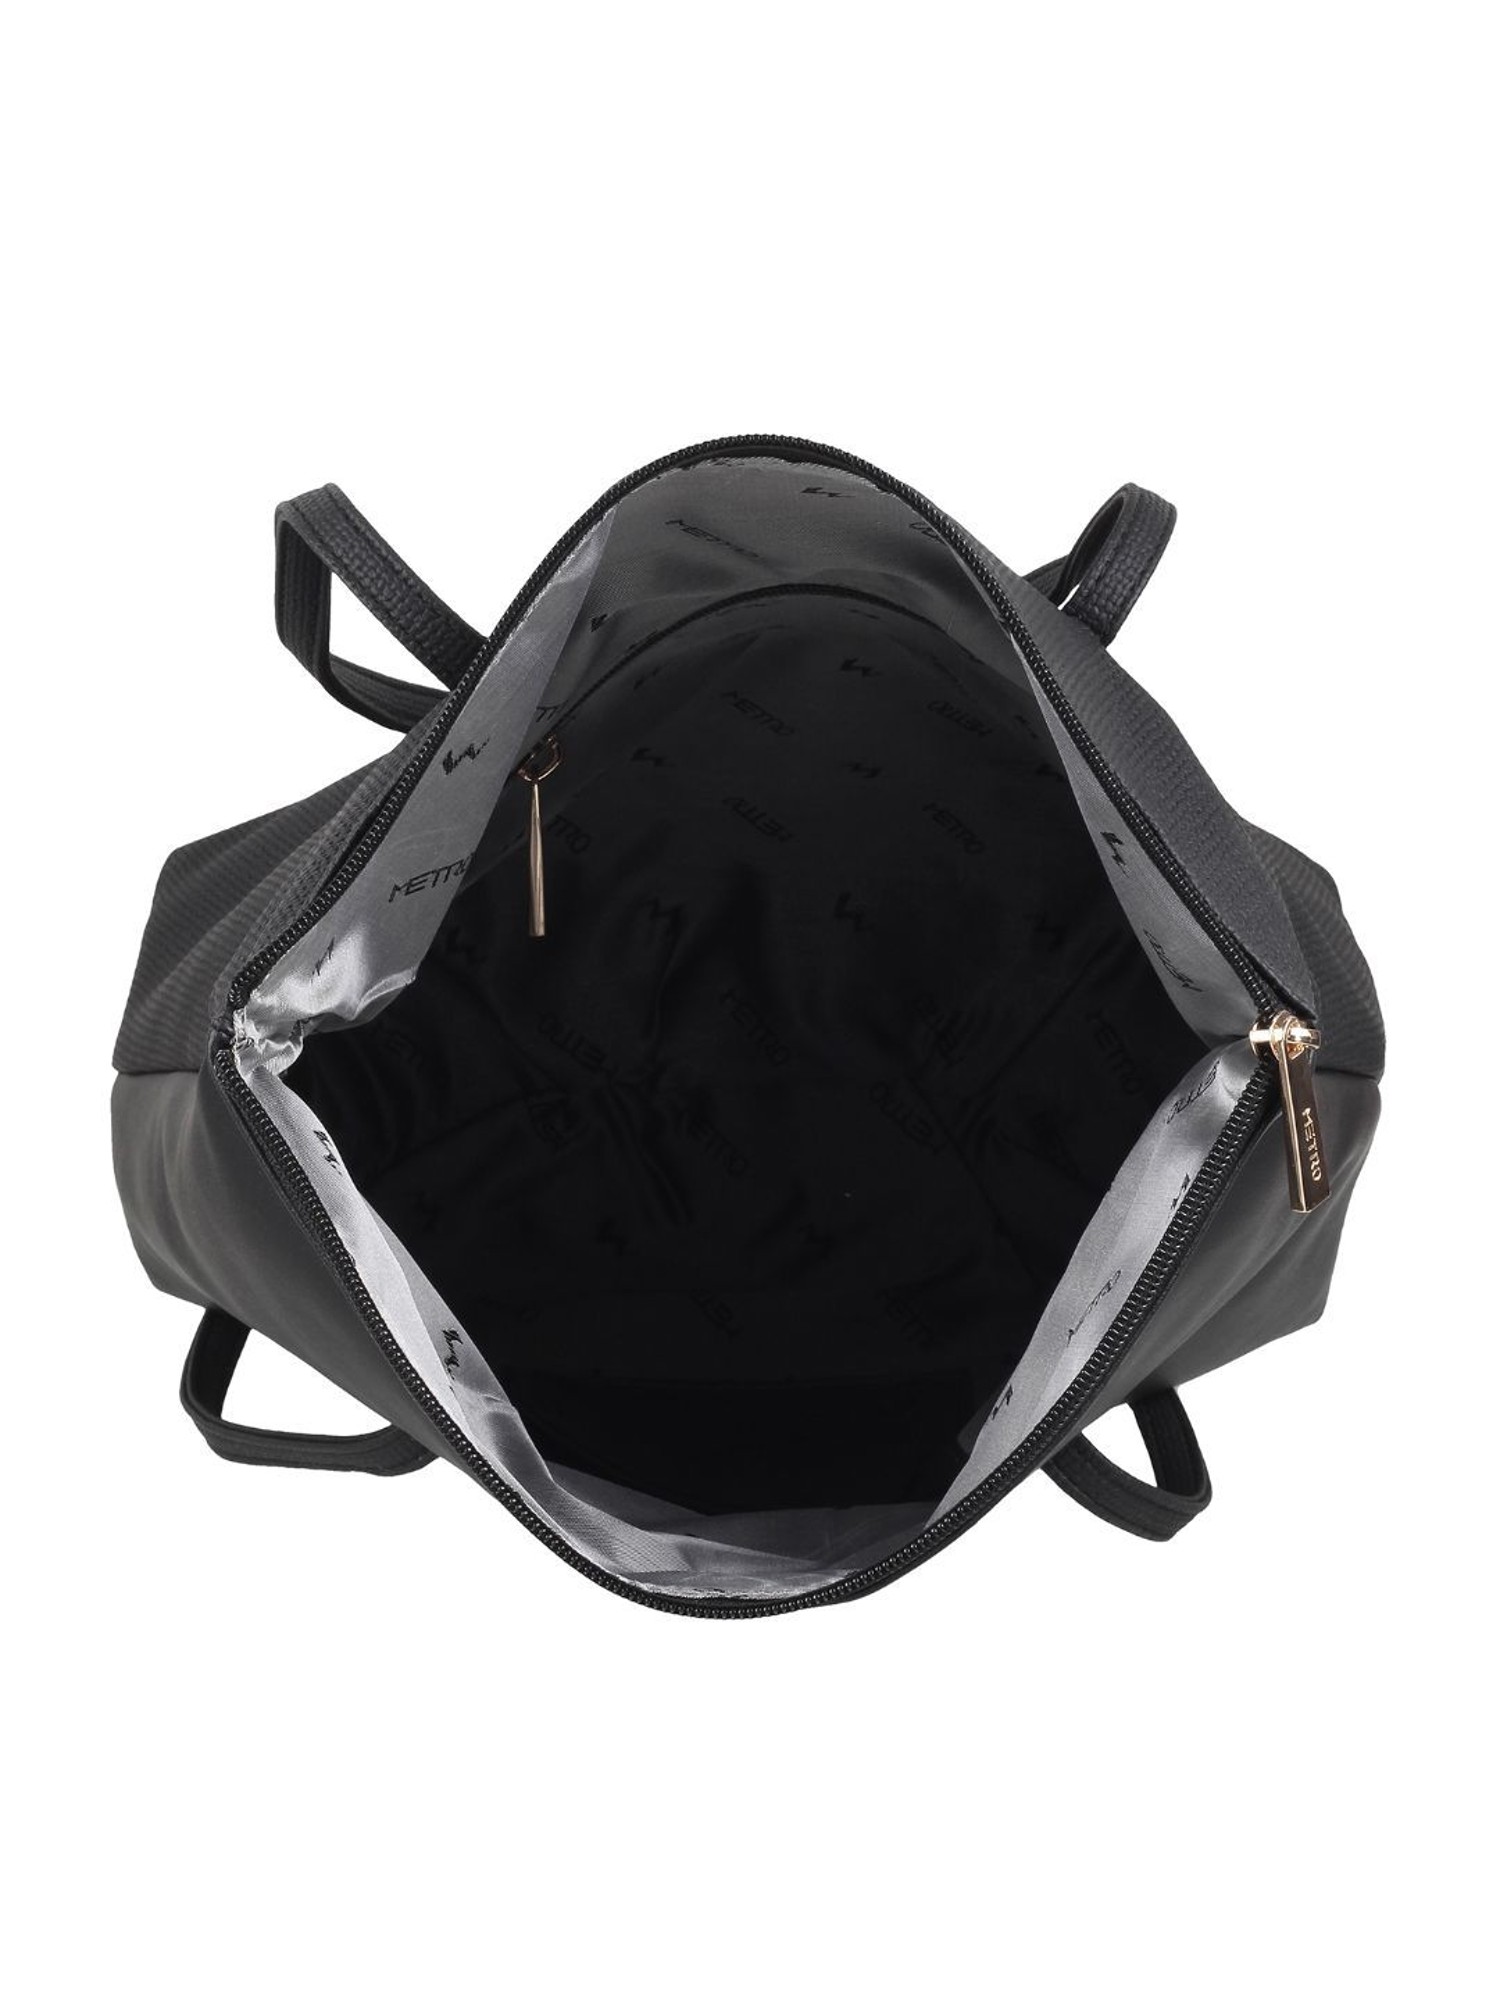 Buy Metro Brown Medium Shoulder Bag at Best Price @ Tata CLiQ